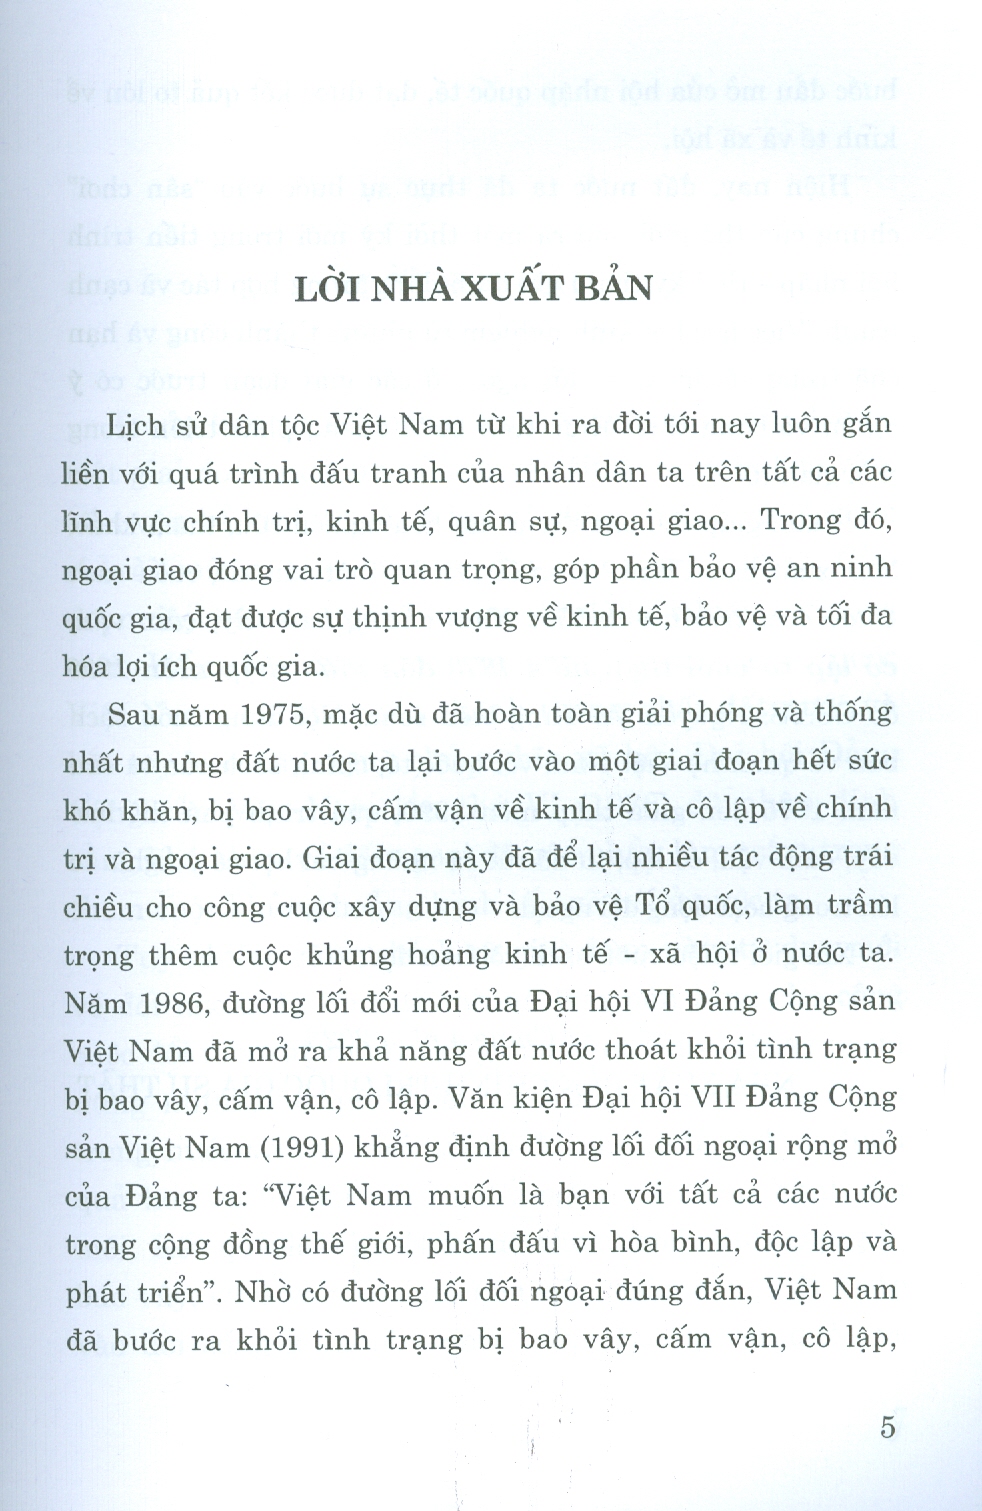 Cuộc đấu tranh của Việt Nam chống bao vây, cấm vận, cô lập từ cuối thập niên 1970 đến giữa thập niên 1990